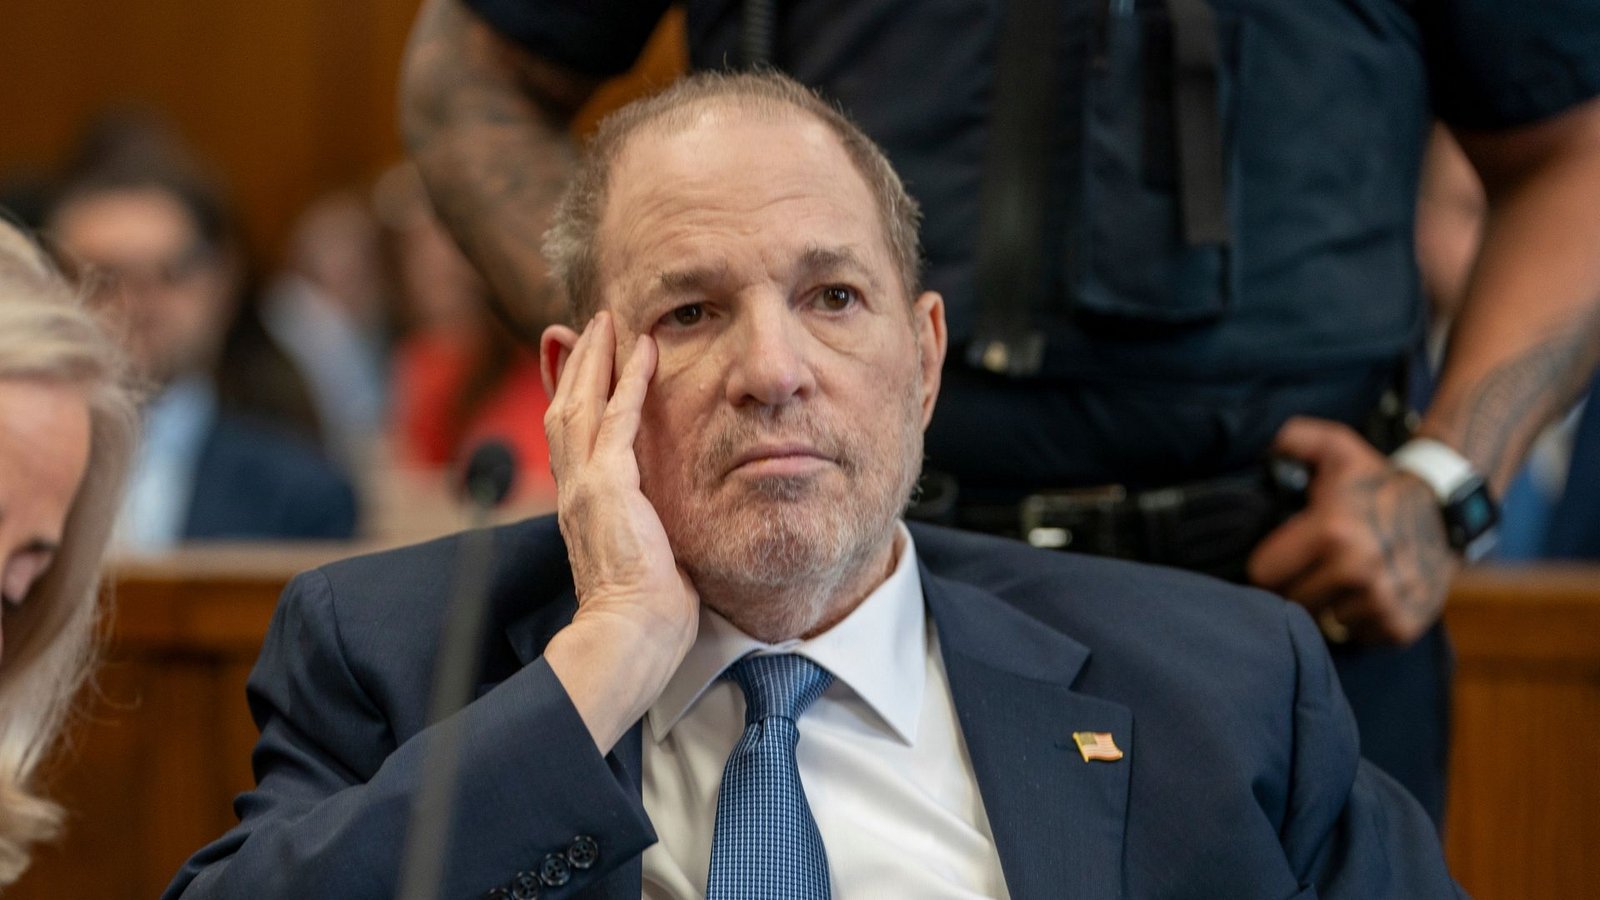 Harvey Weinstein war gestern zum ersten Mal wieder in einem New Yorker Gerichtssaal, seit seine Verurteilung wegen Vergewaltigung im Jahr 2020.Foto: David Dee Delgado/POOL Reuters/AP